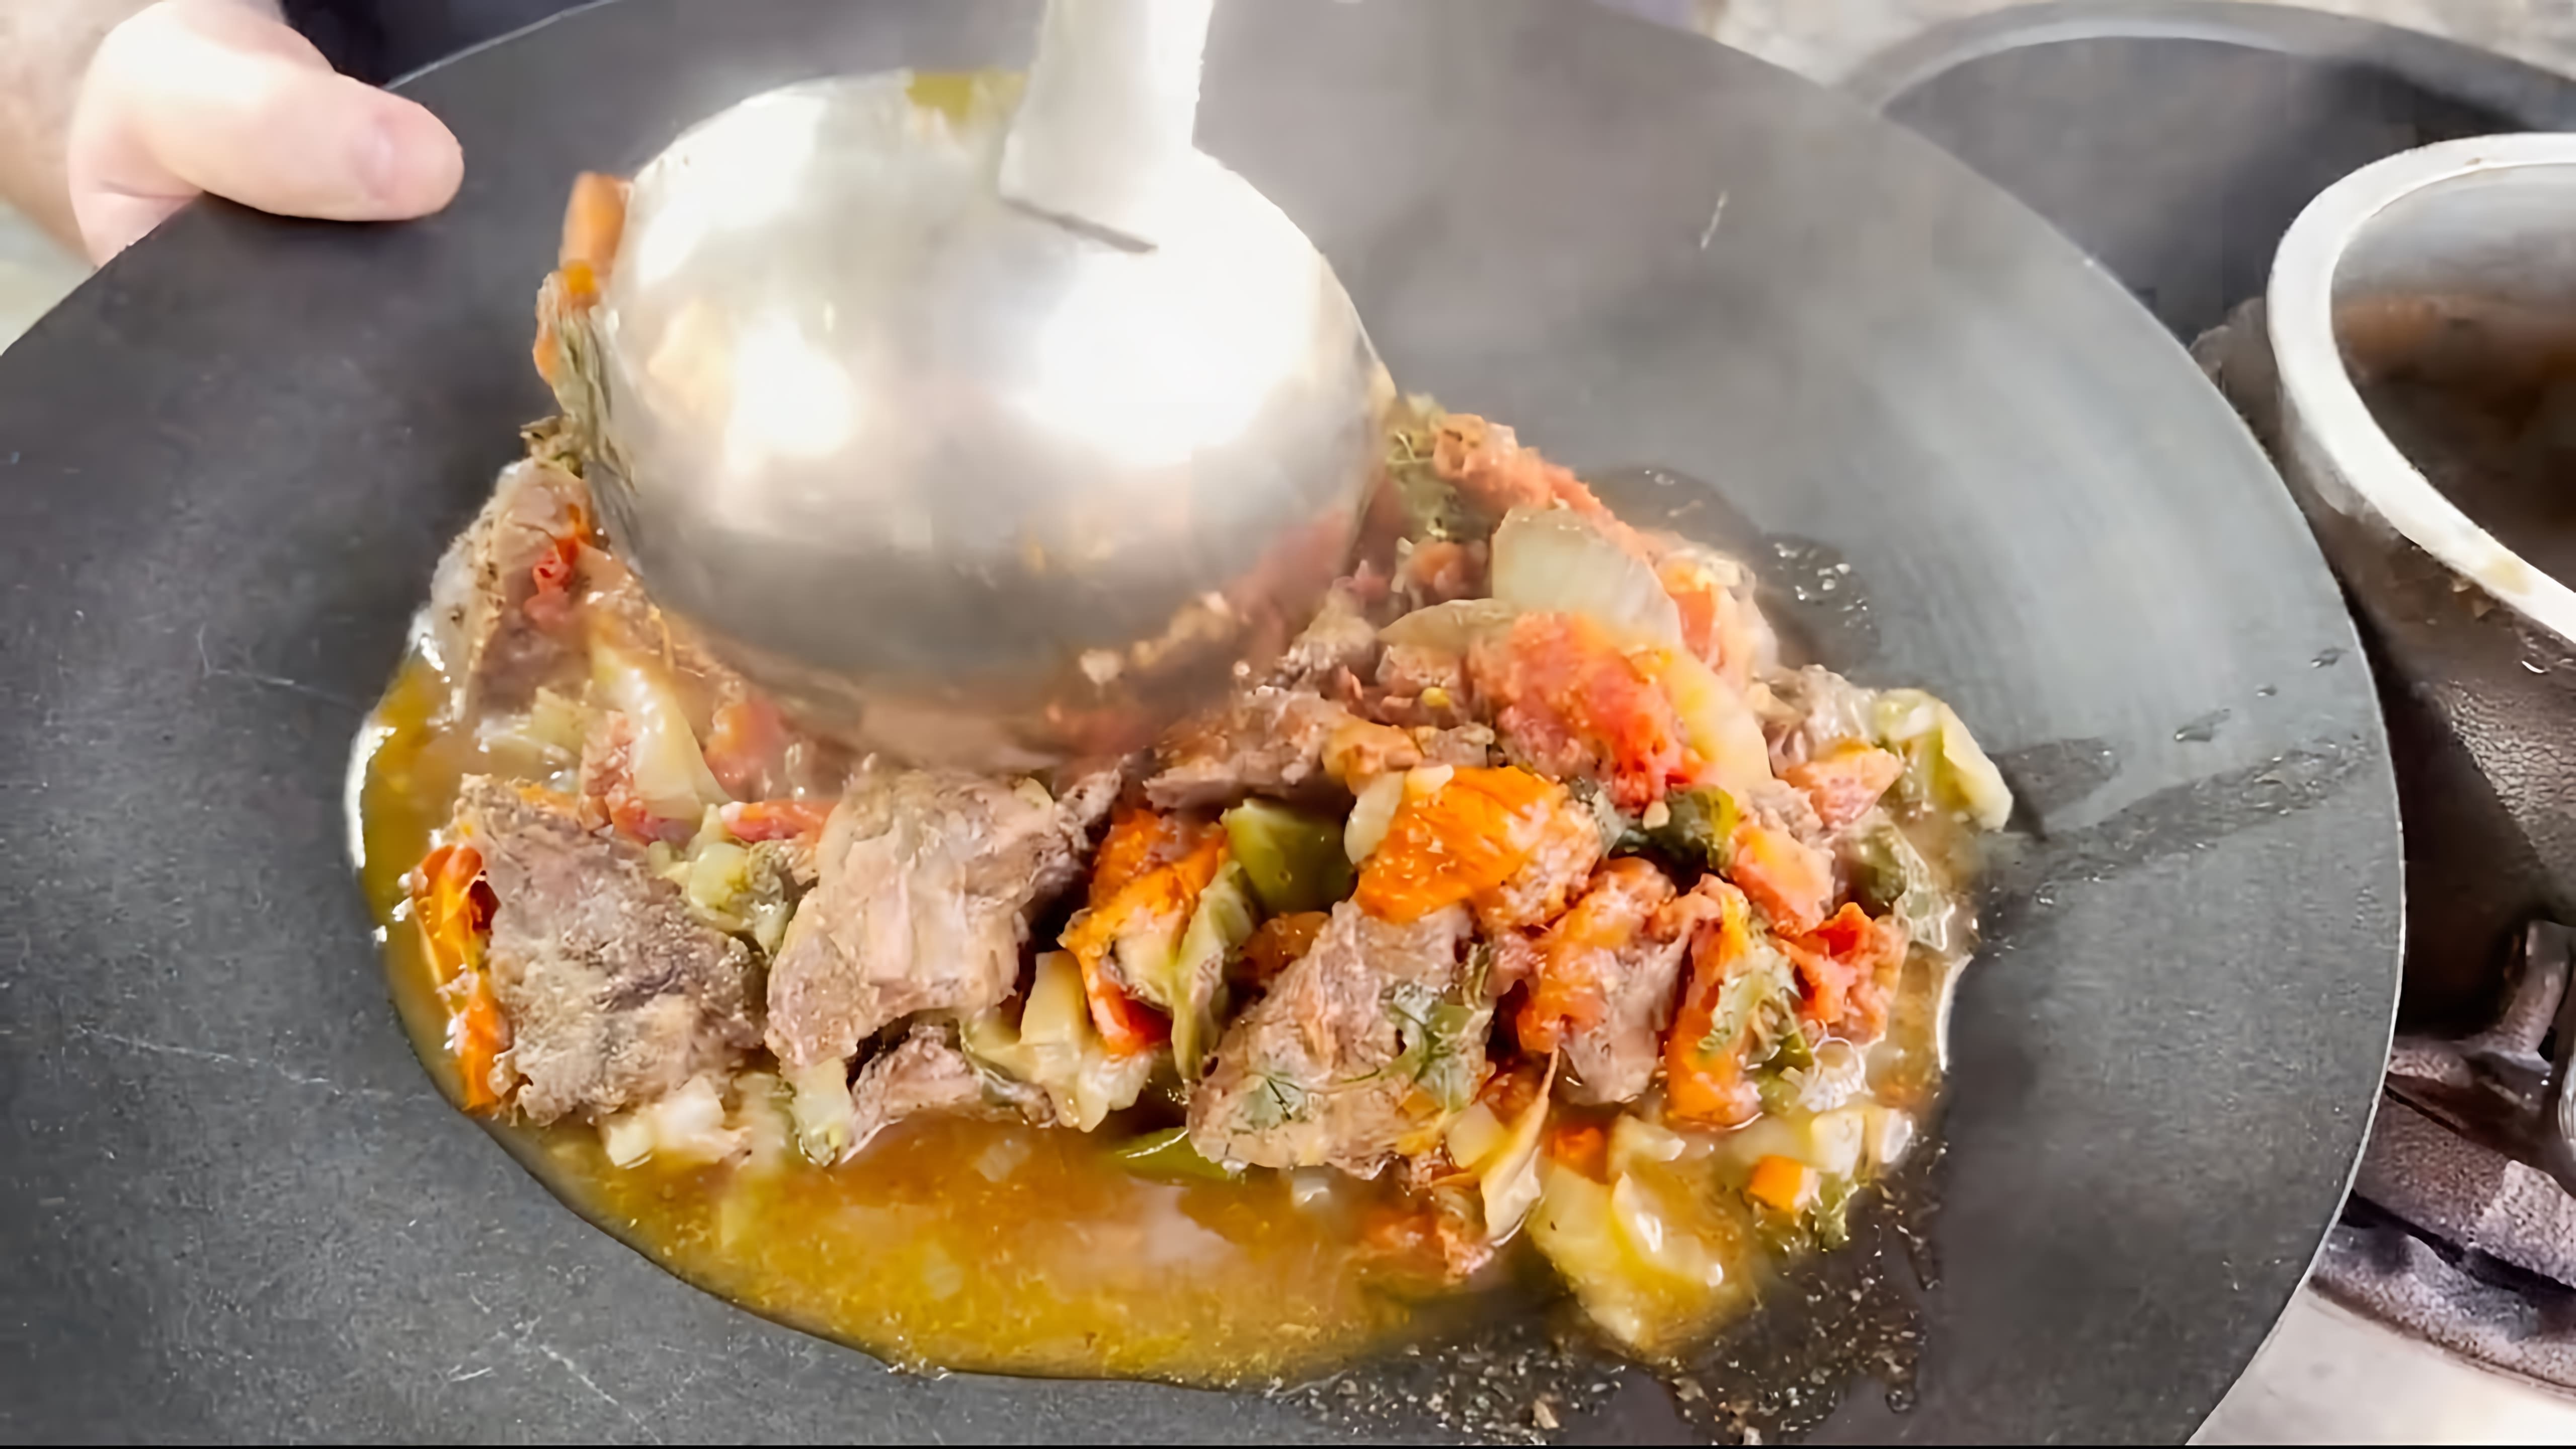 В этом видео бывалый готовит мясо лося в афганском казане